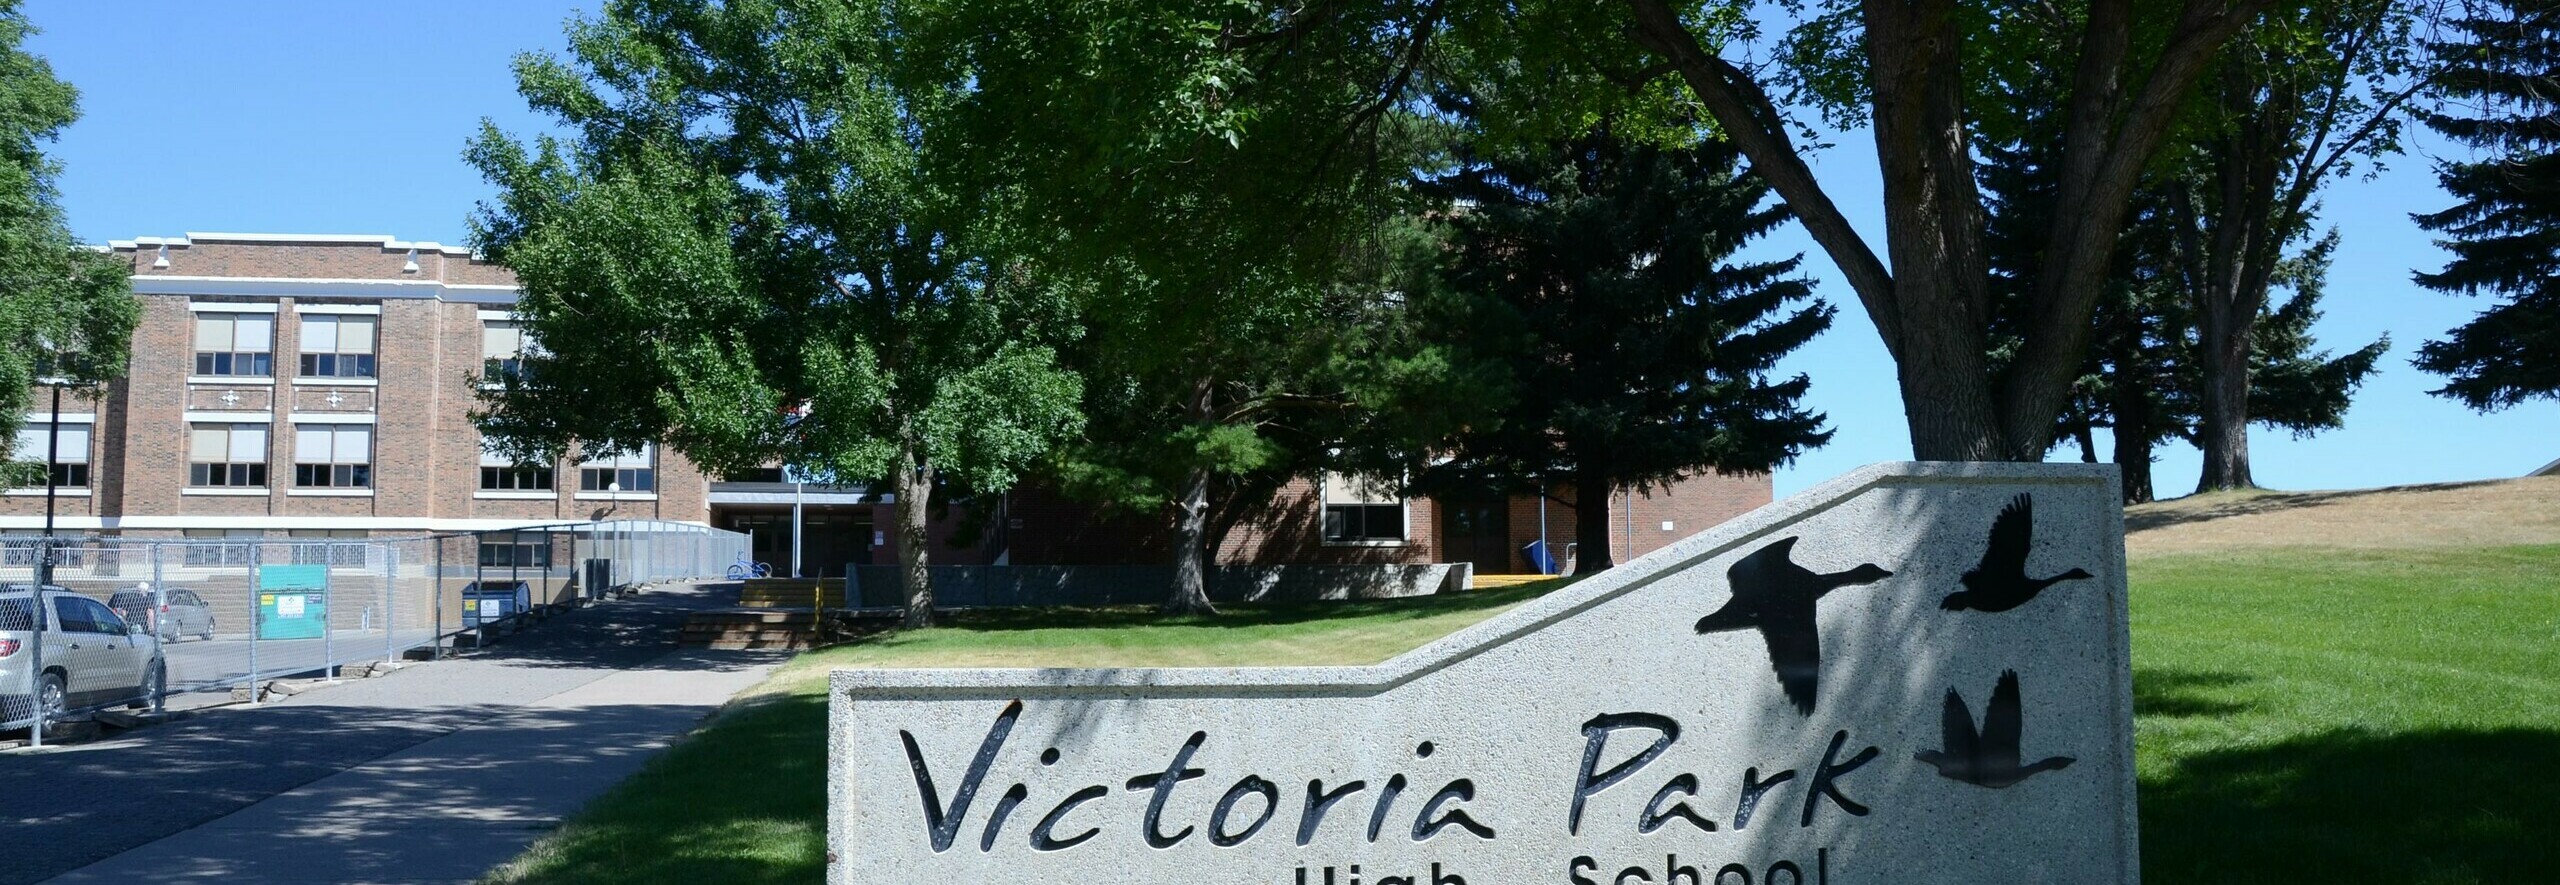 Victoria Park High School Banner Photo